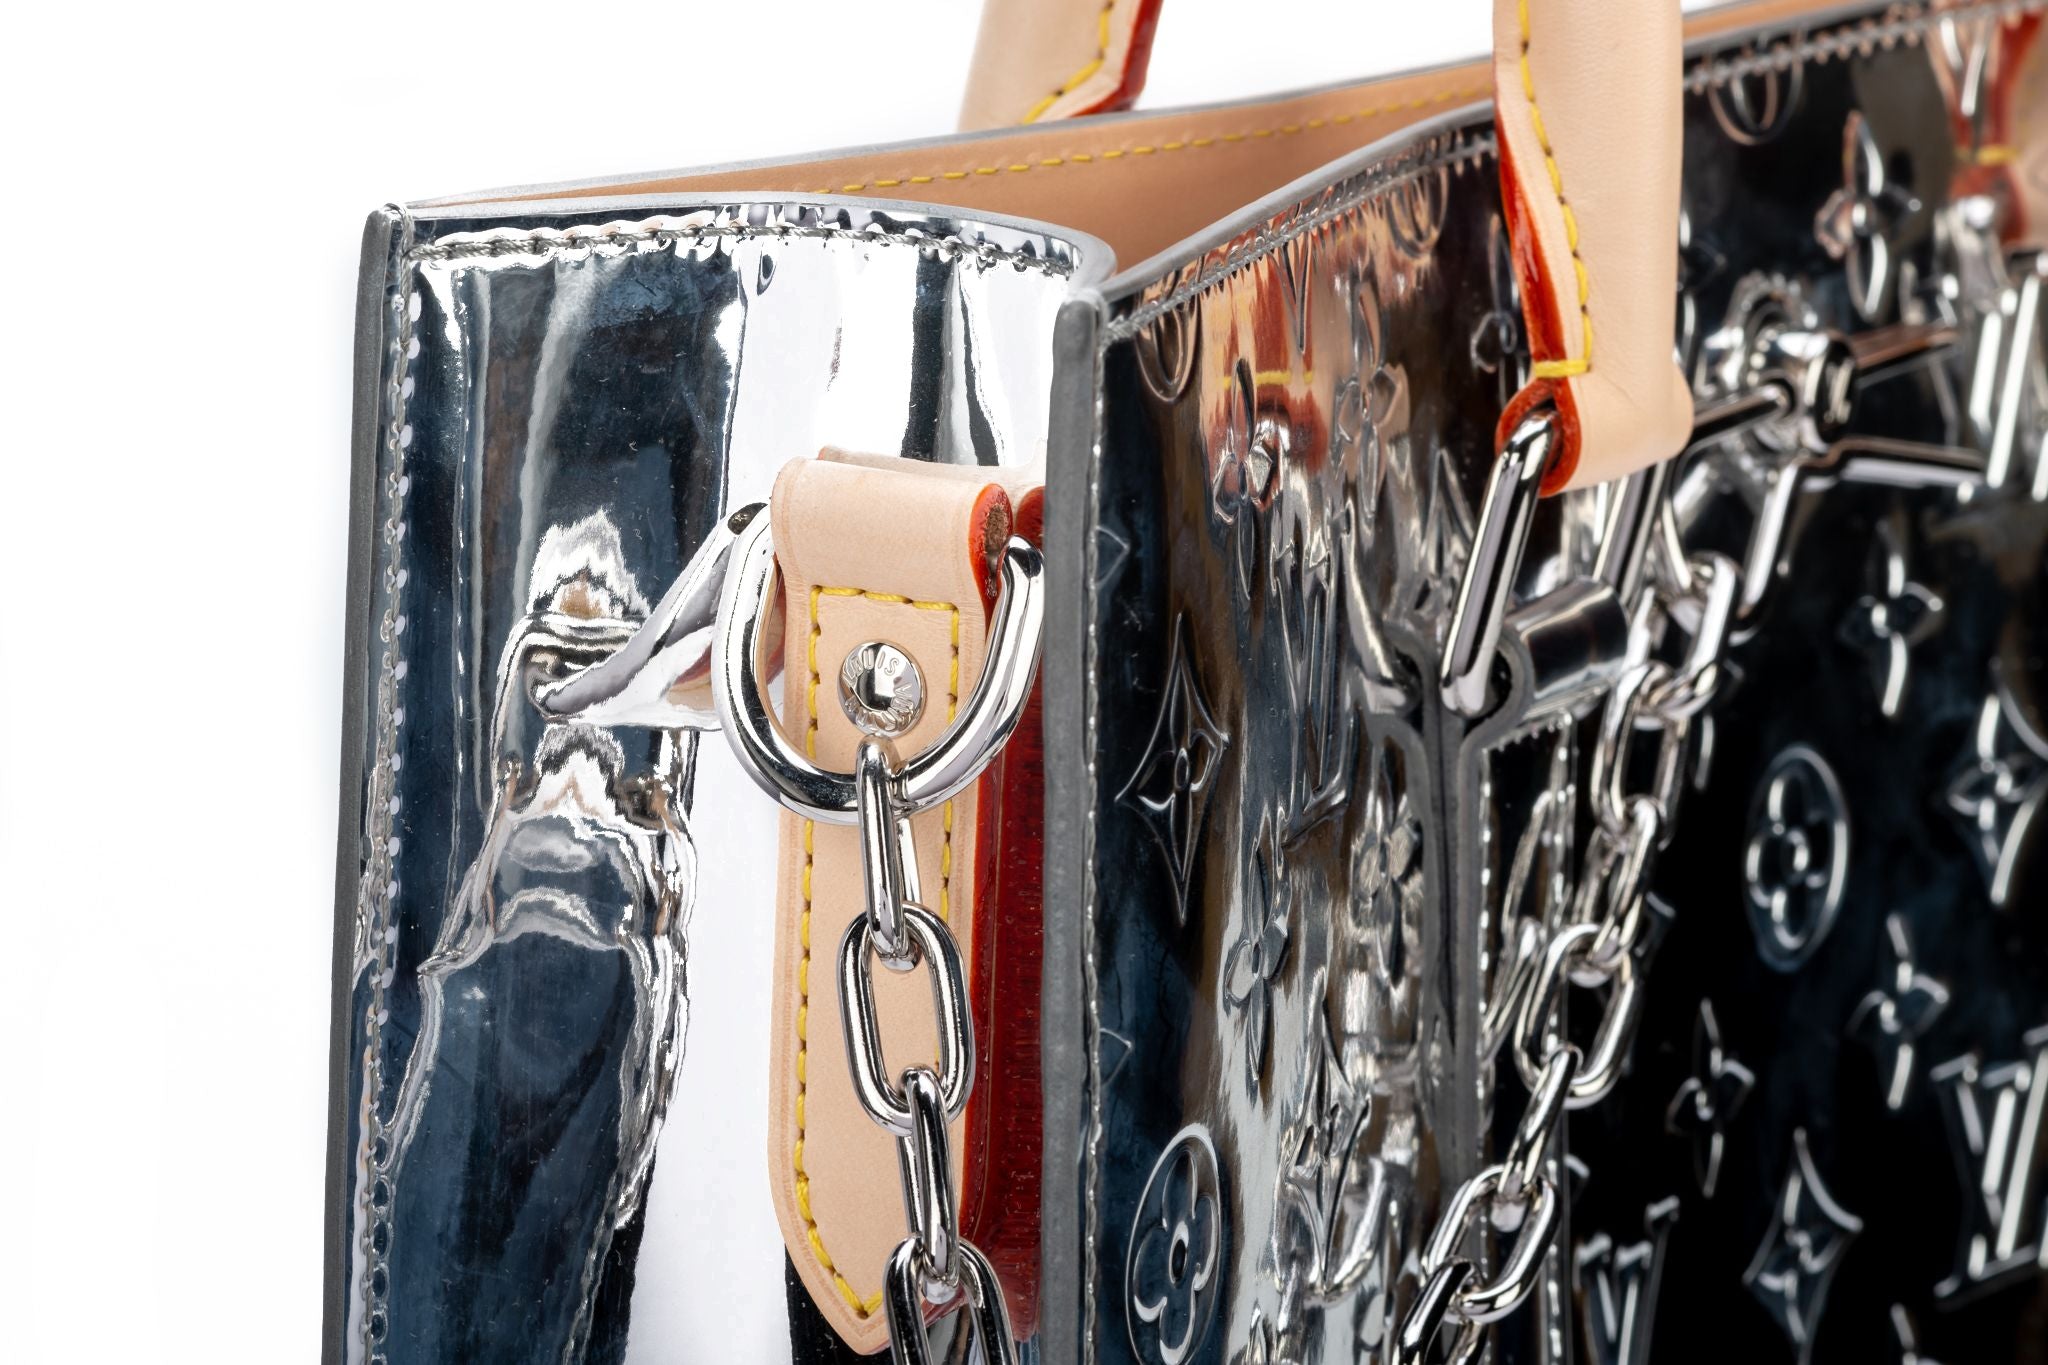 Bags Briefcases Louis Vuitton Plat Bag Mirror (Under Virgil Abloh)